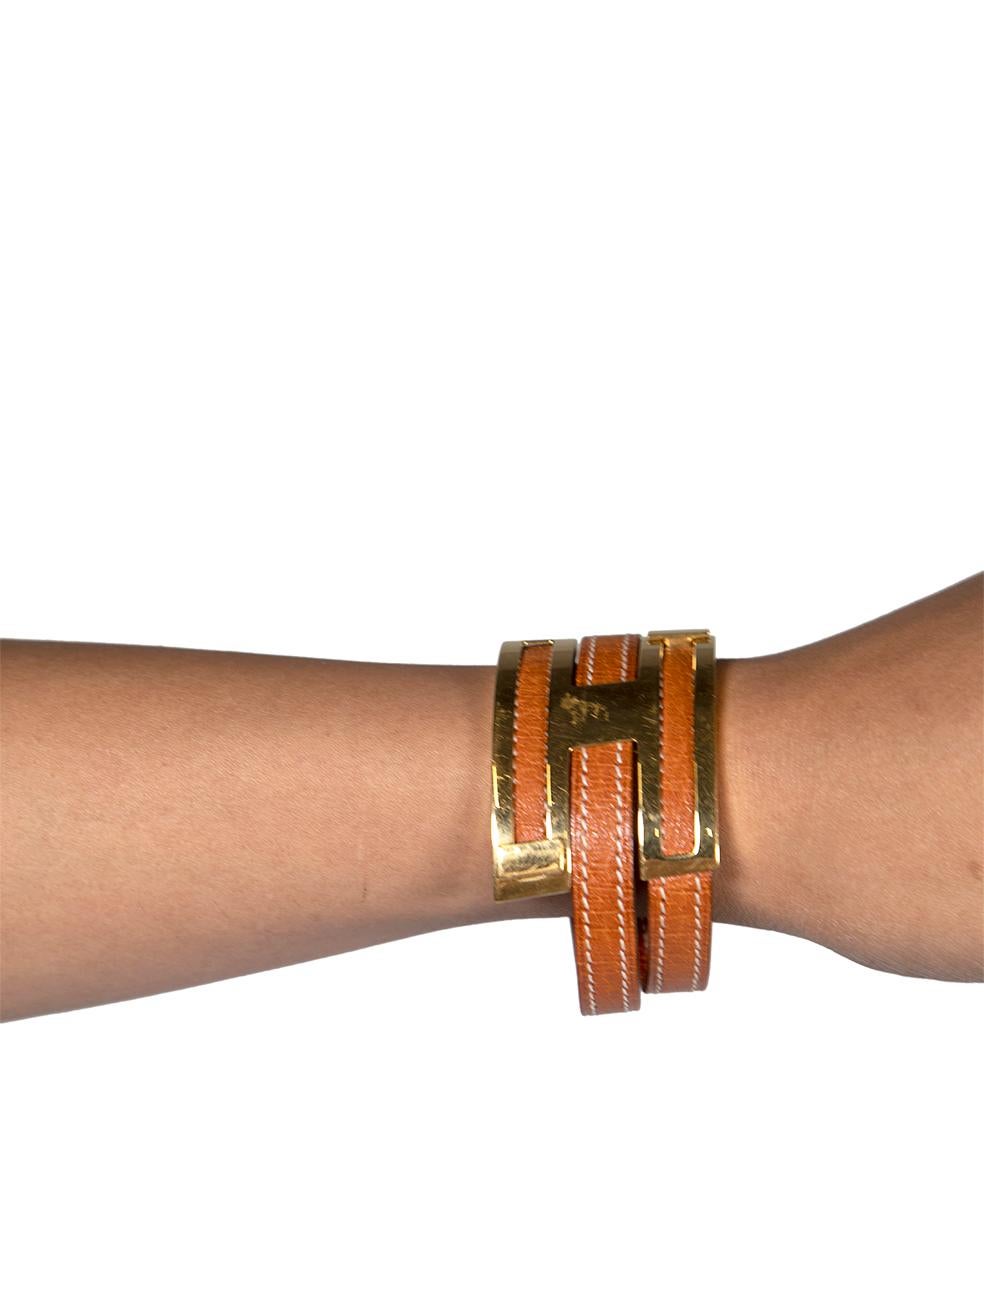 CONDIT ist sehr gut. Minimale Abnutzung des Armbands ist offensichtlich. Minimale Abnutzung der goldenen Hardware mit Kratzern auf diesem gebrauchten Hermès Designer Wiederverkauf Artikel.
 
 
 
 Einzelheiten
 
 
 2001
 
 Vintage By
 
 Modell: